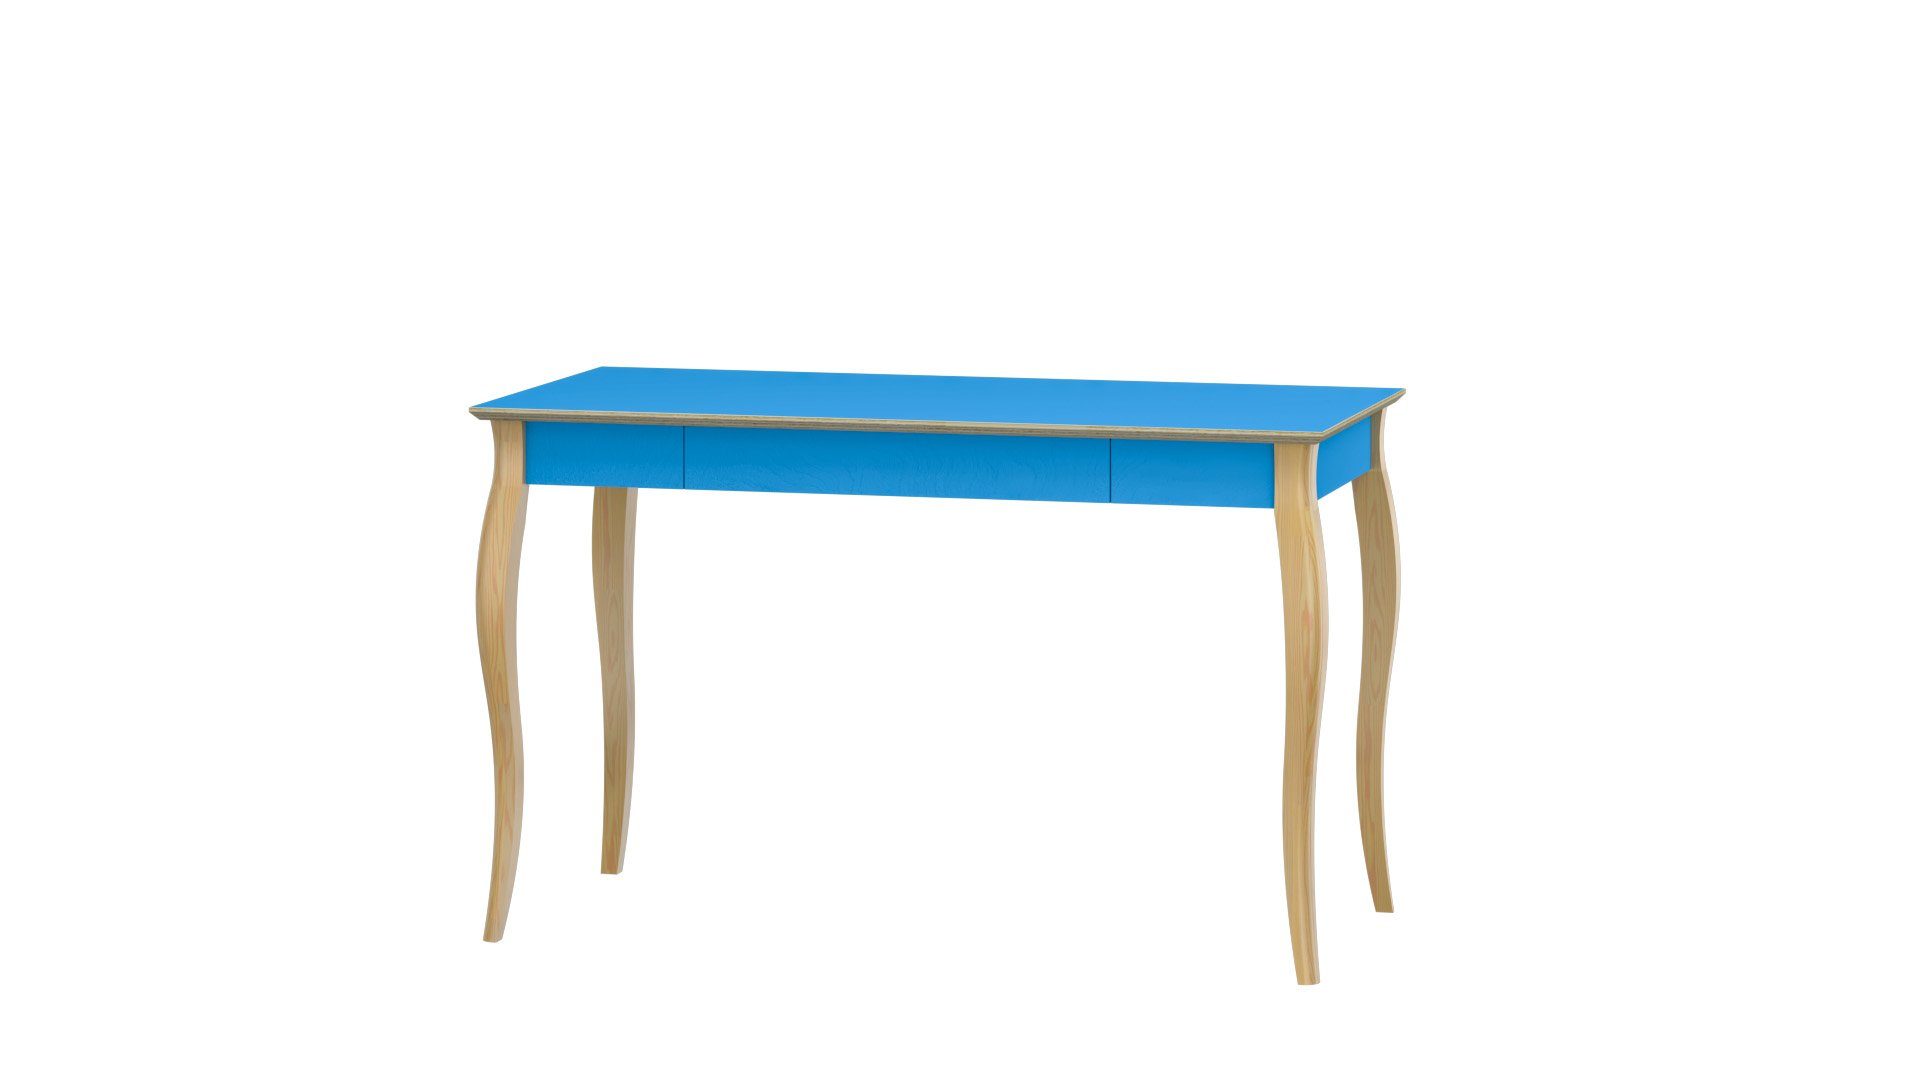 Siblo Schreibtisch Kinderschreibtisch Tola mit Schublade - Moderner Schreibtisch - minimalistisches Design - Kinderzimmer - Jugendzimmer - Birkensperrholz - Buchenholz (Kinderschreibtisch Tola mit Schublade) Blau